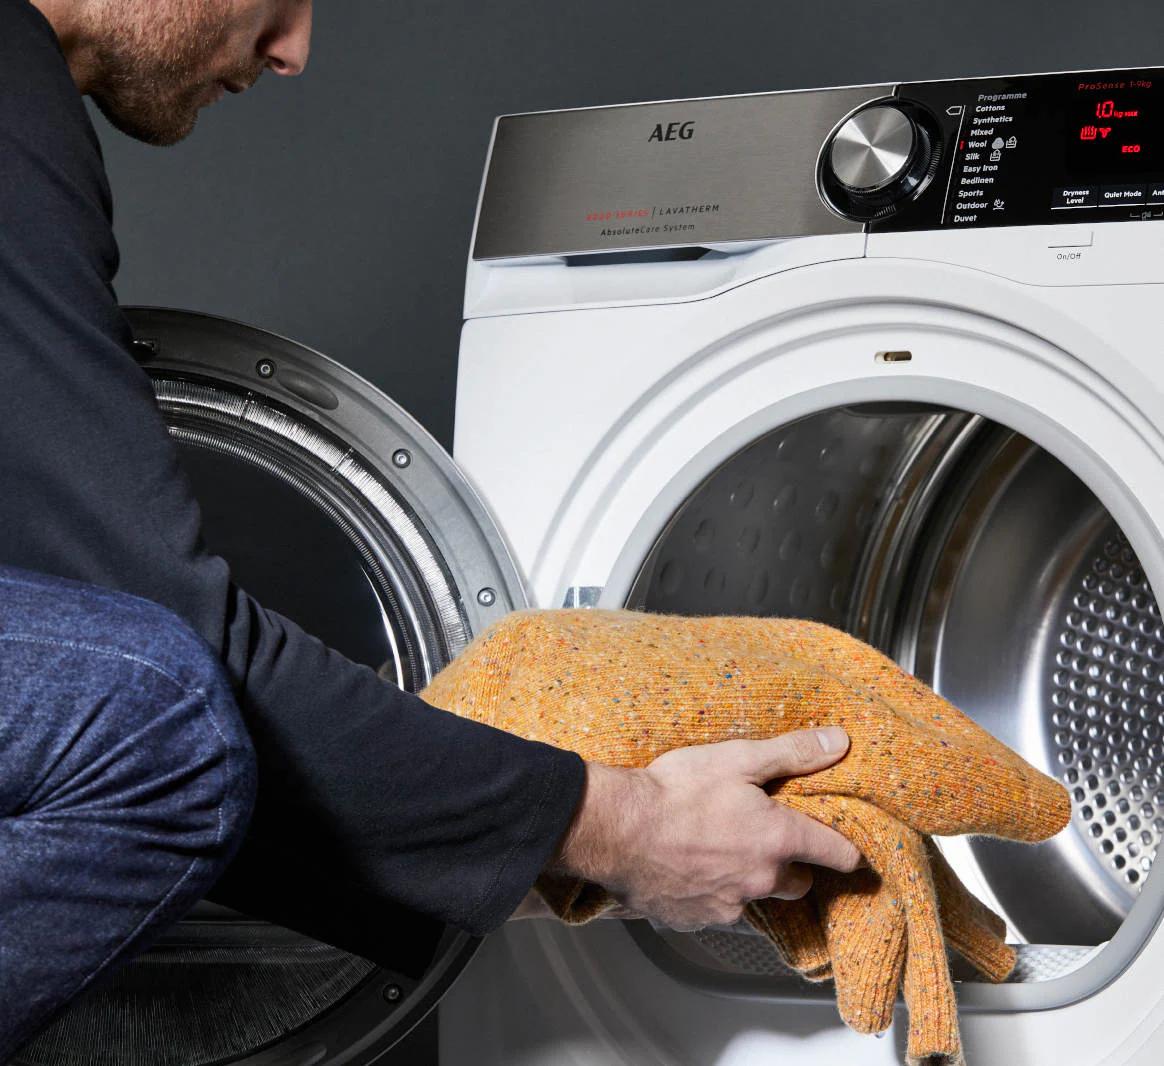 angora en lavadora se puede lavat - Cómo lavar lana de mohair